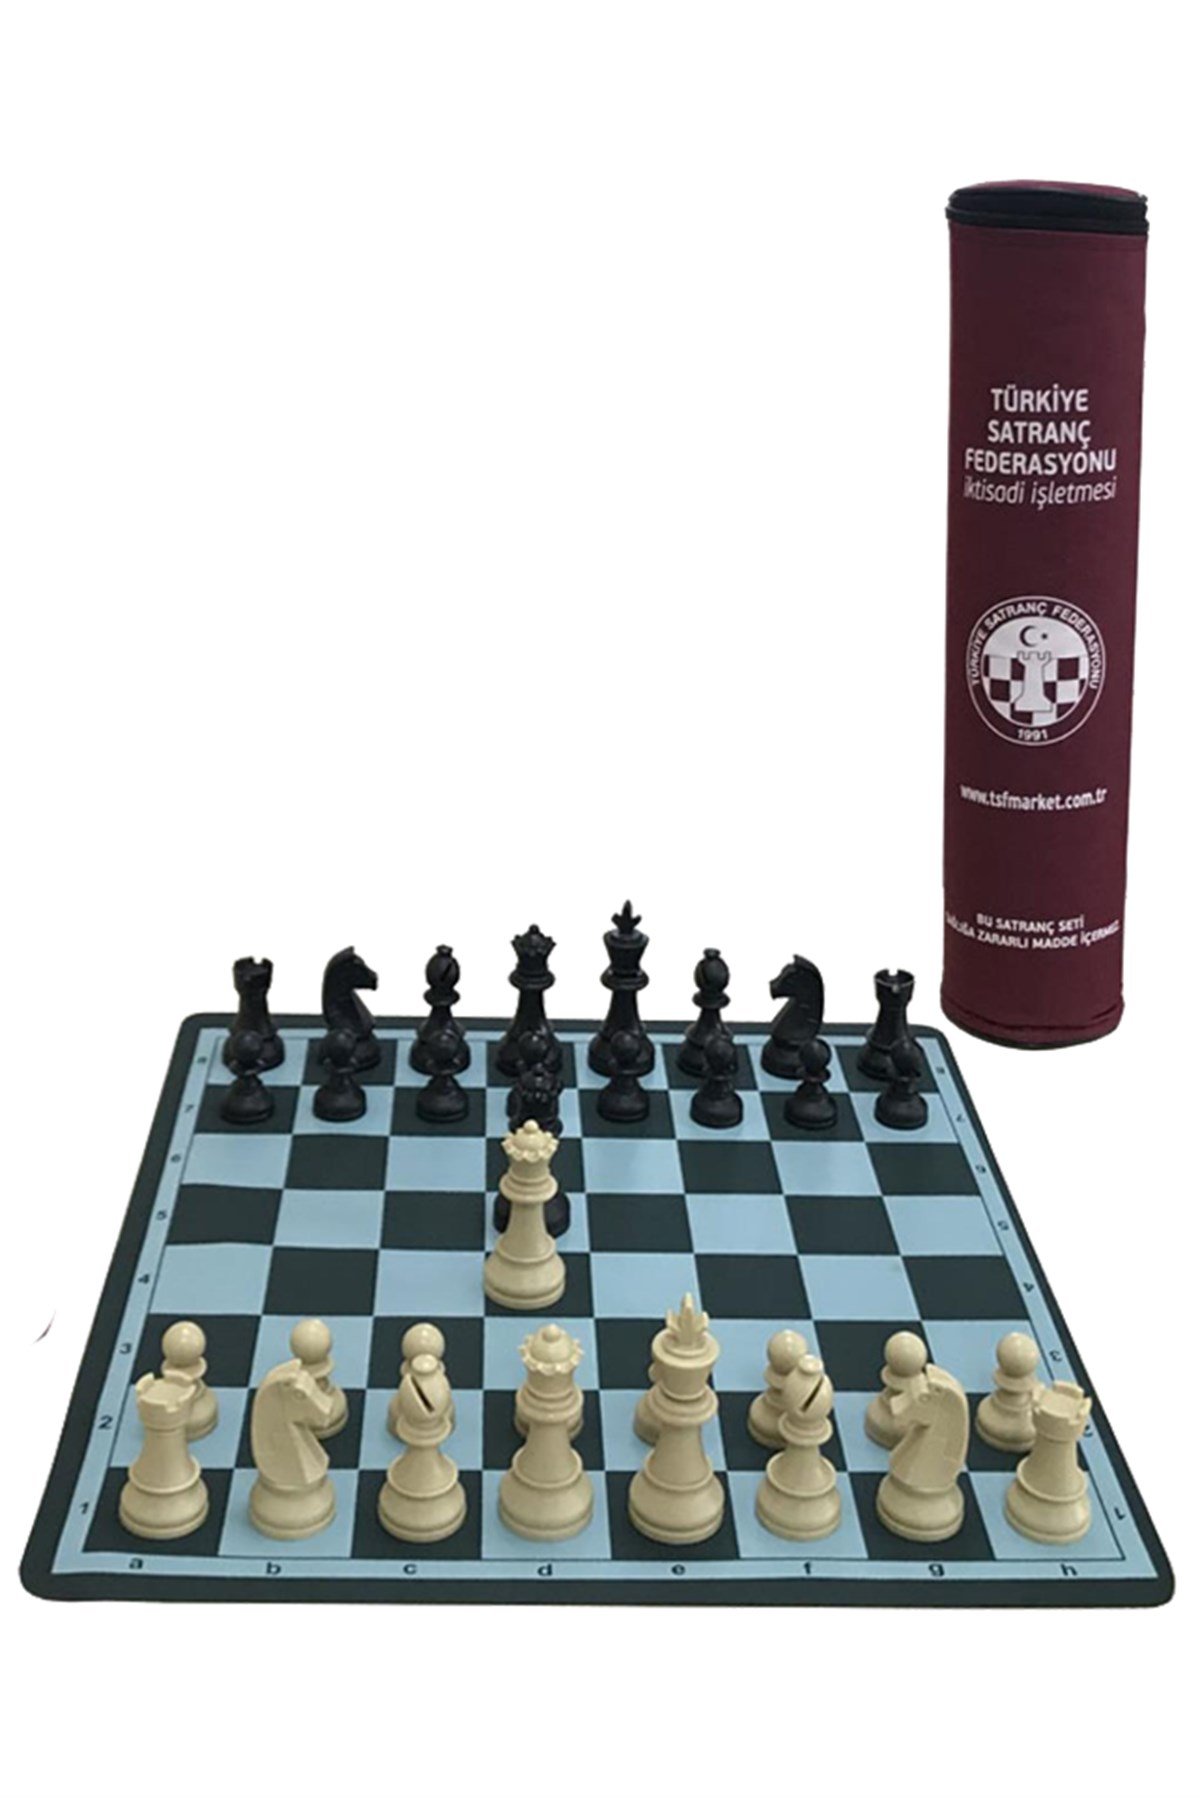 Turnuva Satranç Takımı (Türkiye Satranç Federasyonu))